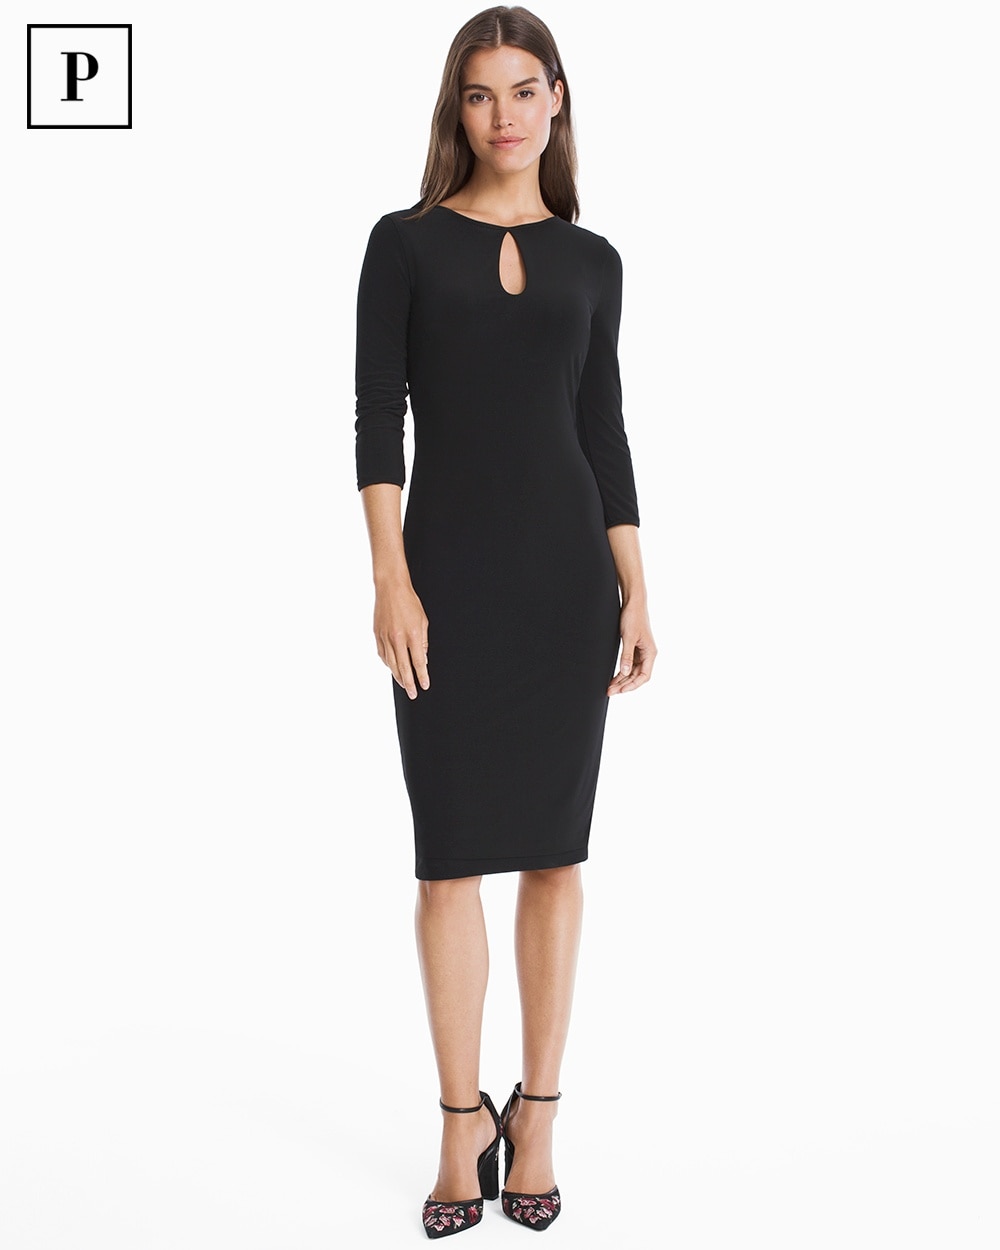 Petite Reversible 3/4-Sleeve Knit Sheath Dress - White House Black Market